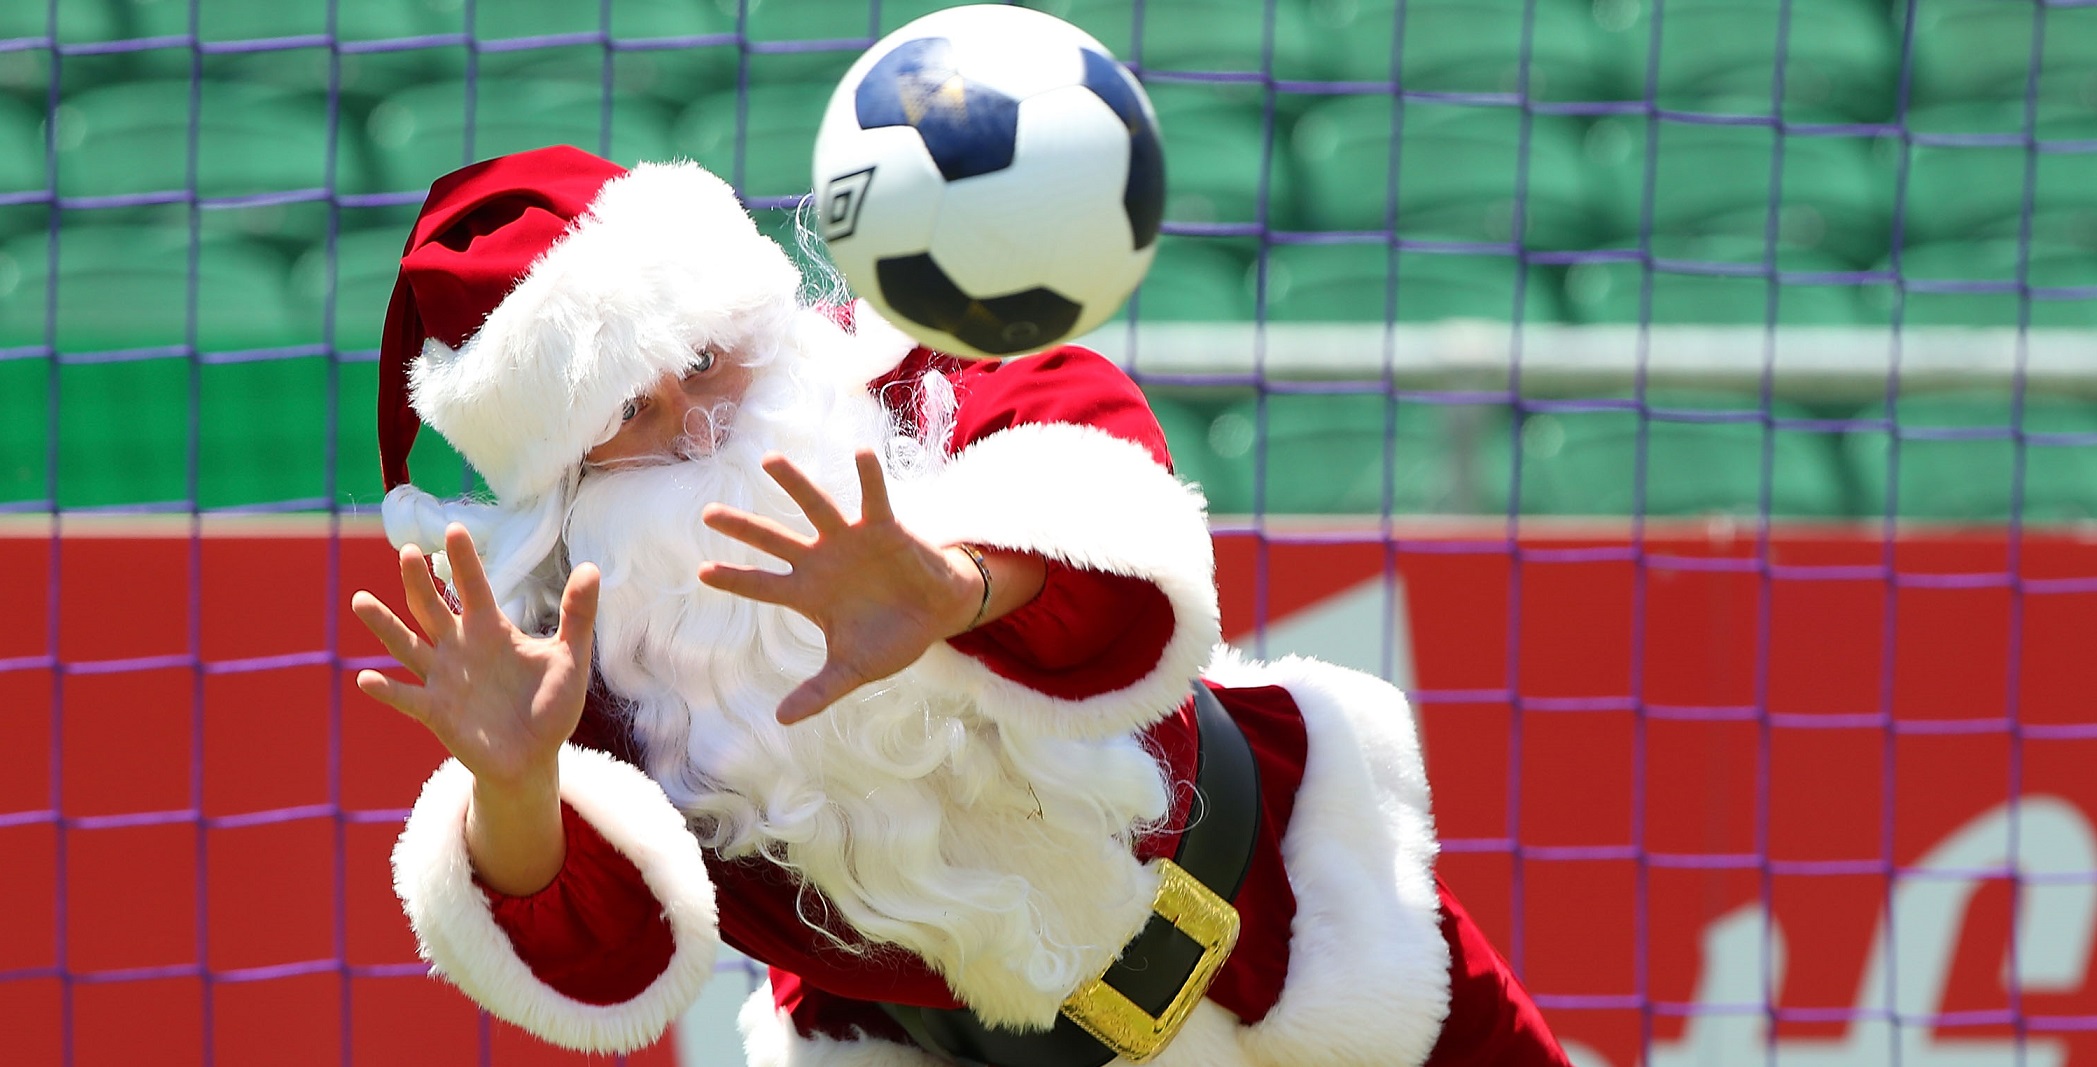 Regali per calciofili: tutte le idee più strane a Natale